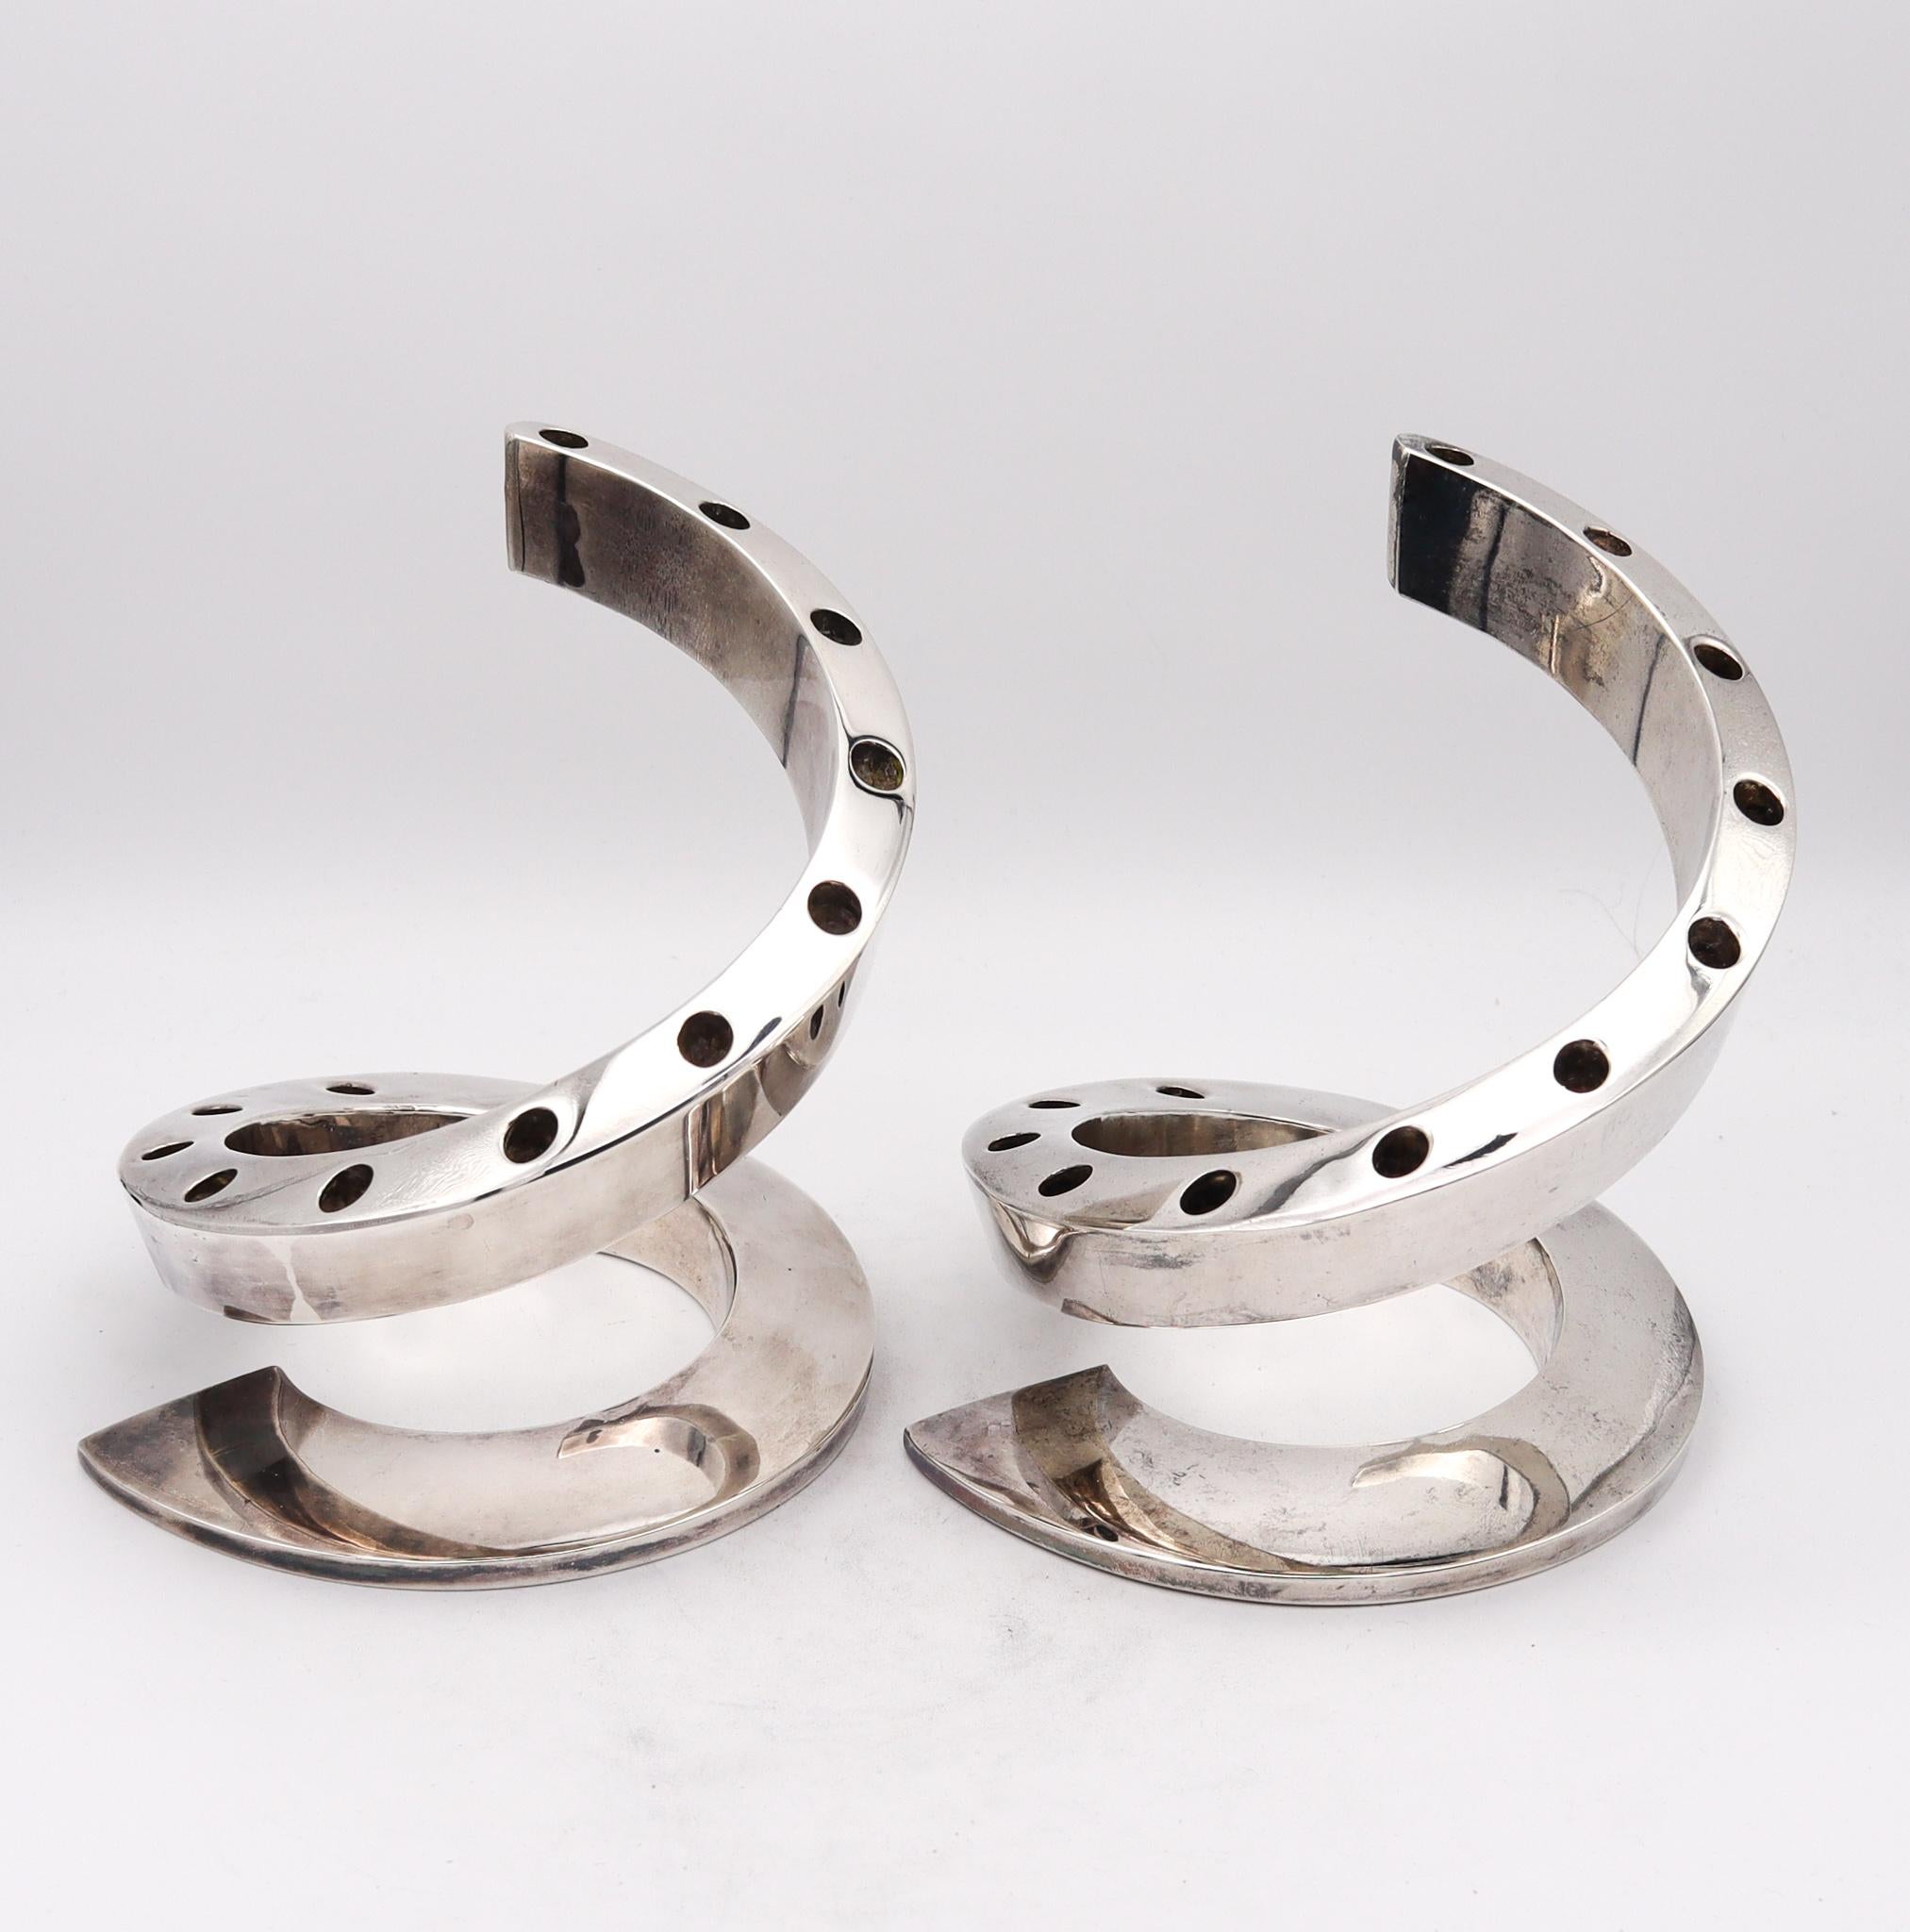 Paire de bougeoirs en forme de tourbillon conçus par Bertil Vallien (1938-).

Magnifique paire de bougeoirs sculpturaux en forme de tourbillons, créés en Suède par Bertil Vallien, dans les années 1970. Cette paire a été fabriquée par la société de